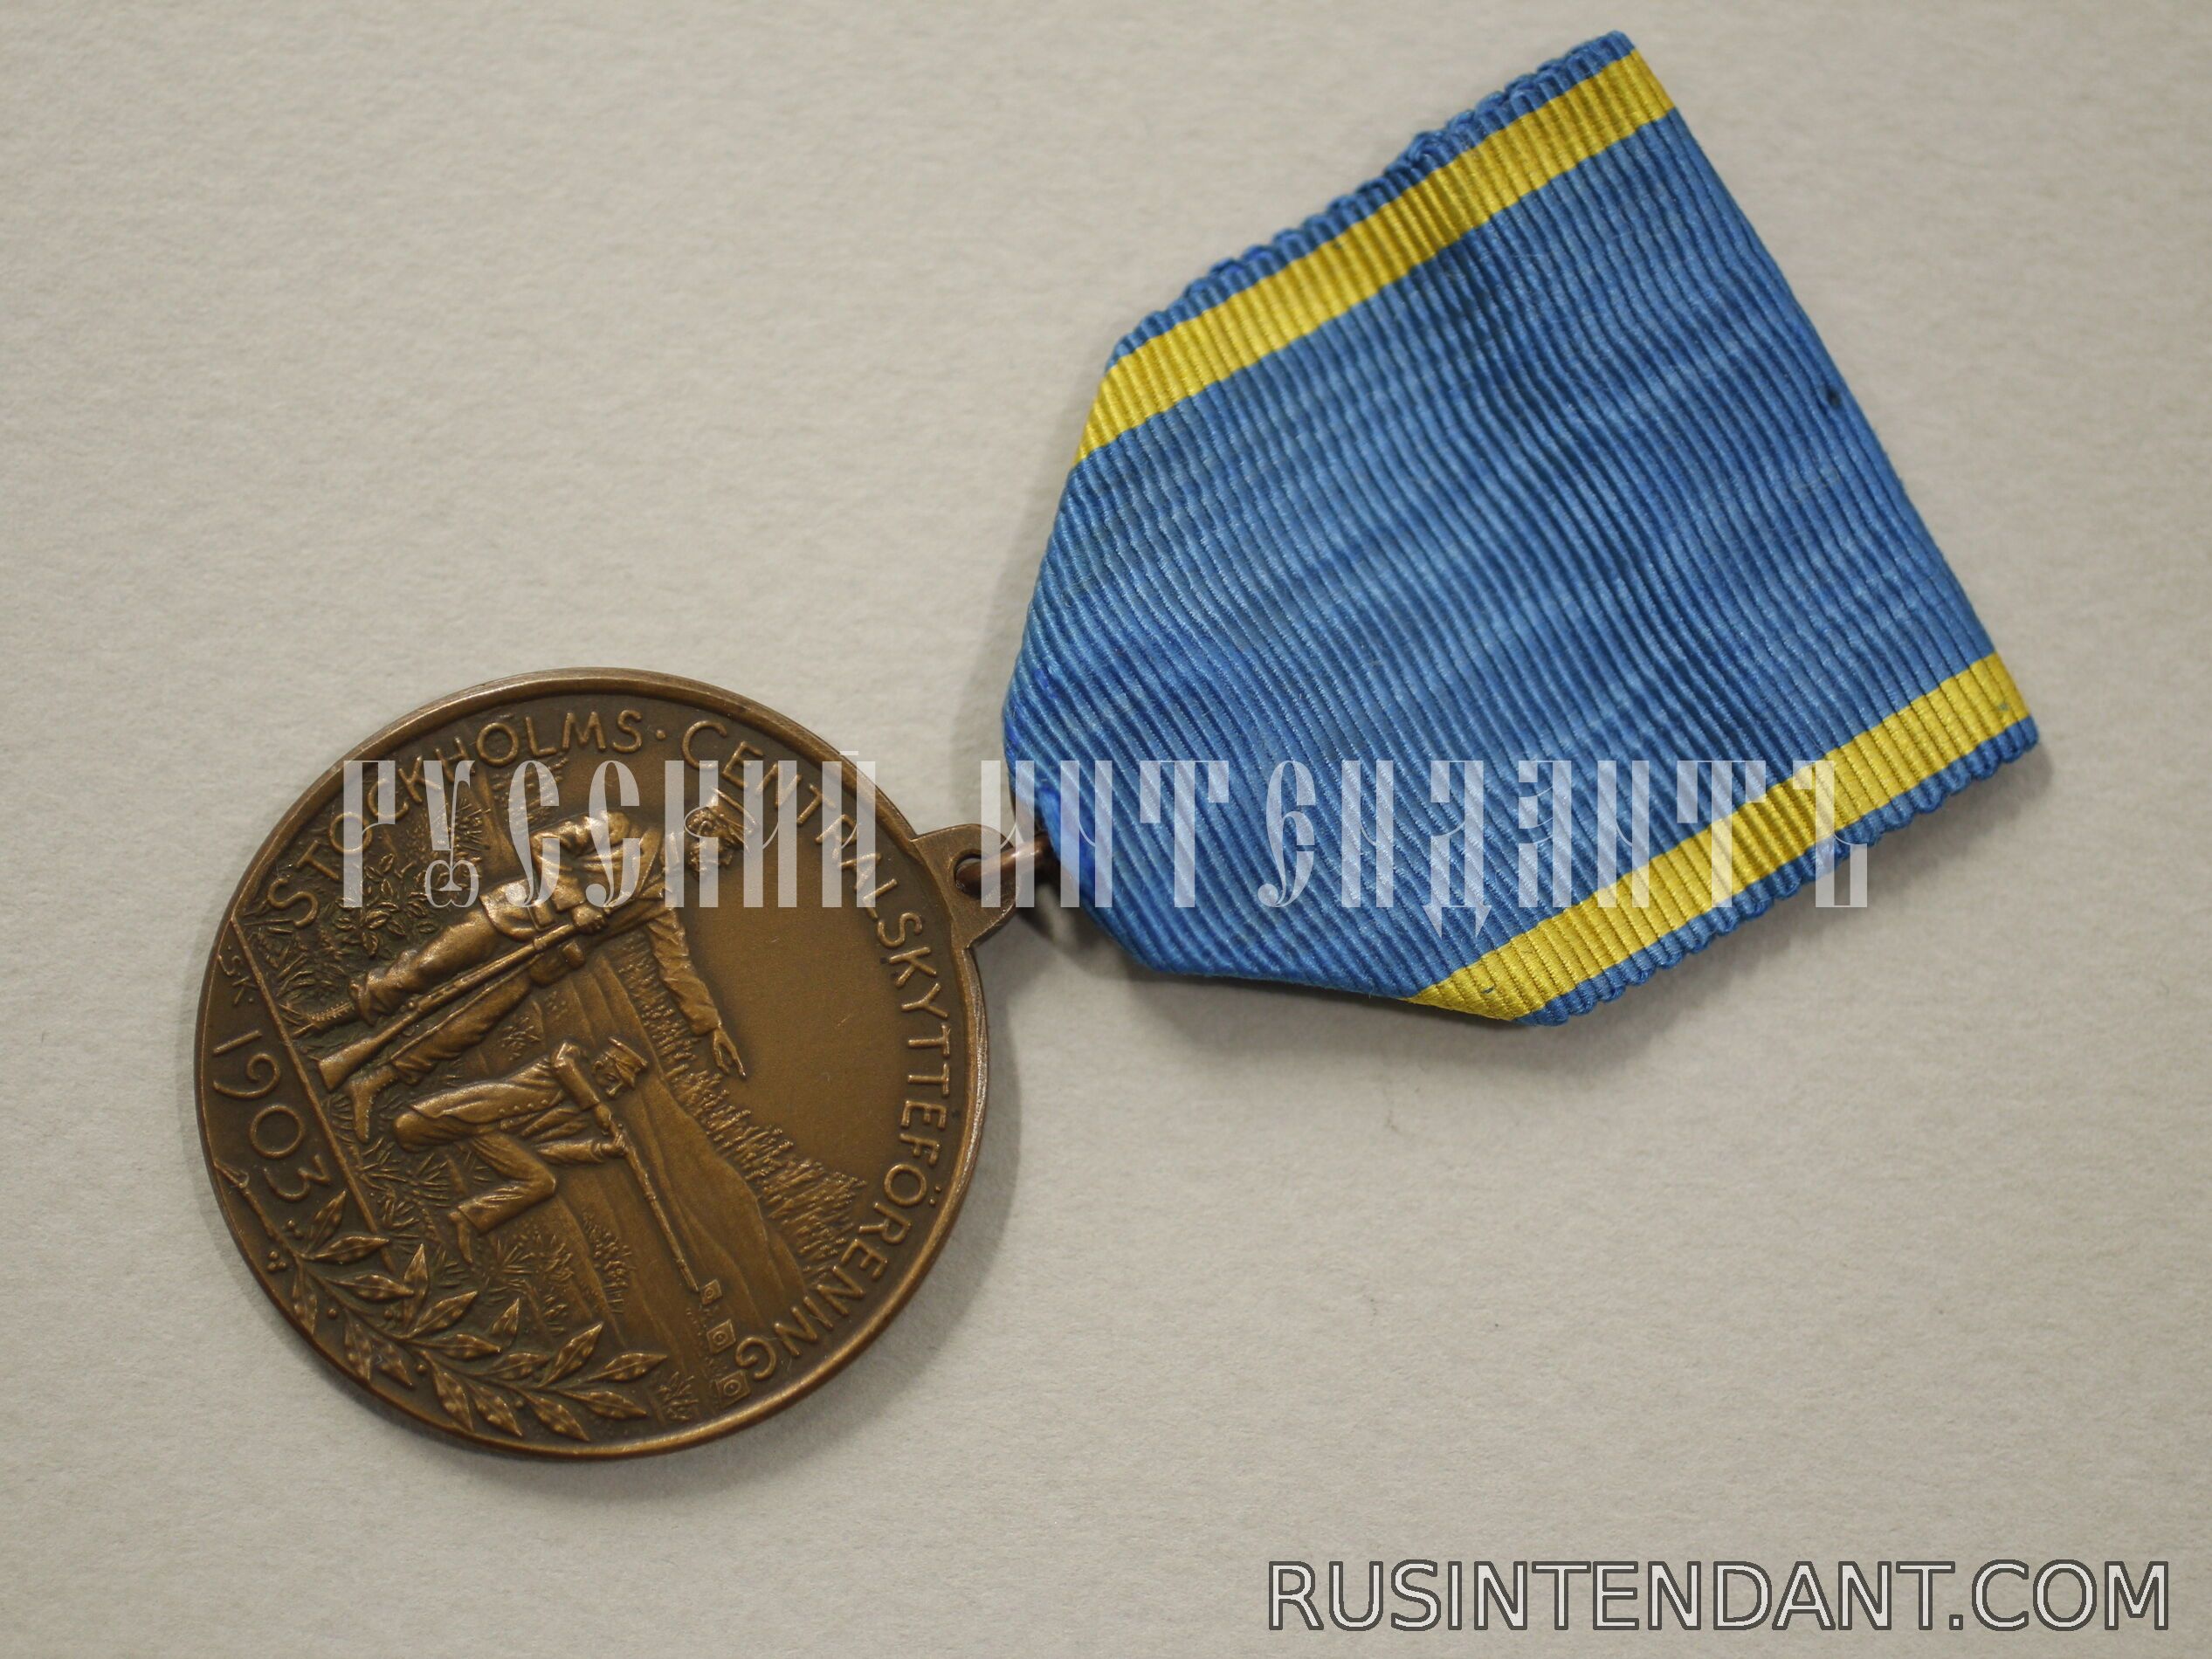 Фото 3: Медаль Центральной стрелковой ассоциации Стокгольма 